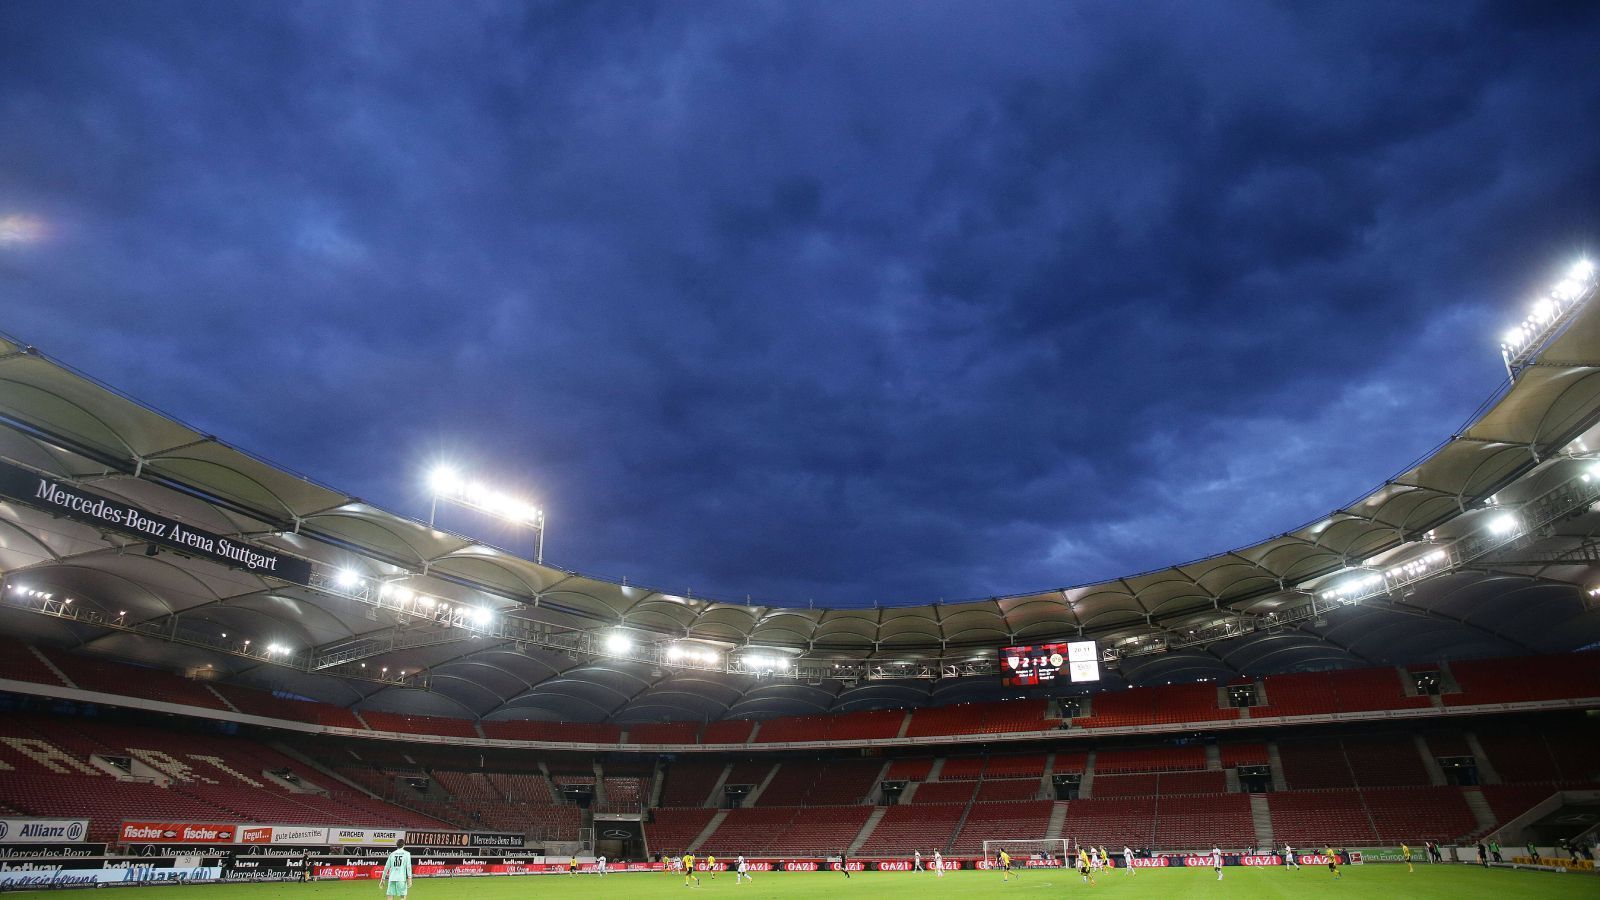 
                <strong>VfB Stuttgart</strong><br>
                Beim VfB Stuttgart jedoch muss das Stadion weiter leer bleiben. Zwar ist die Inzidenz in der Landeshauptstadt Baden-Württembergs am 18. Mai unter 100 gerutscht (98,0), allerdings reicht das nicht, um Zuschauer zum Spiel des VfB gegen Arminia Bielefeld zuzulassen.
              